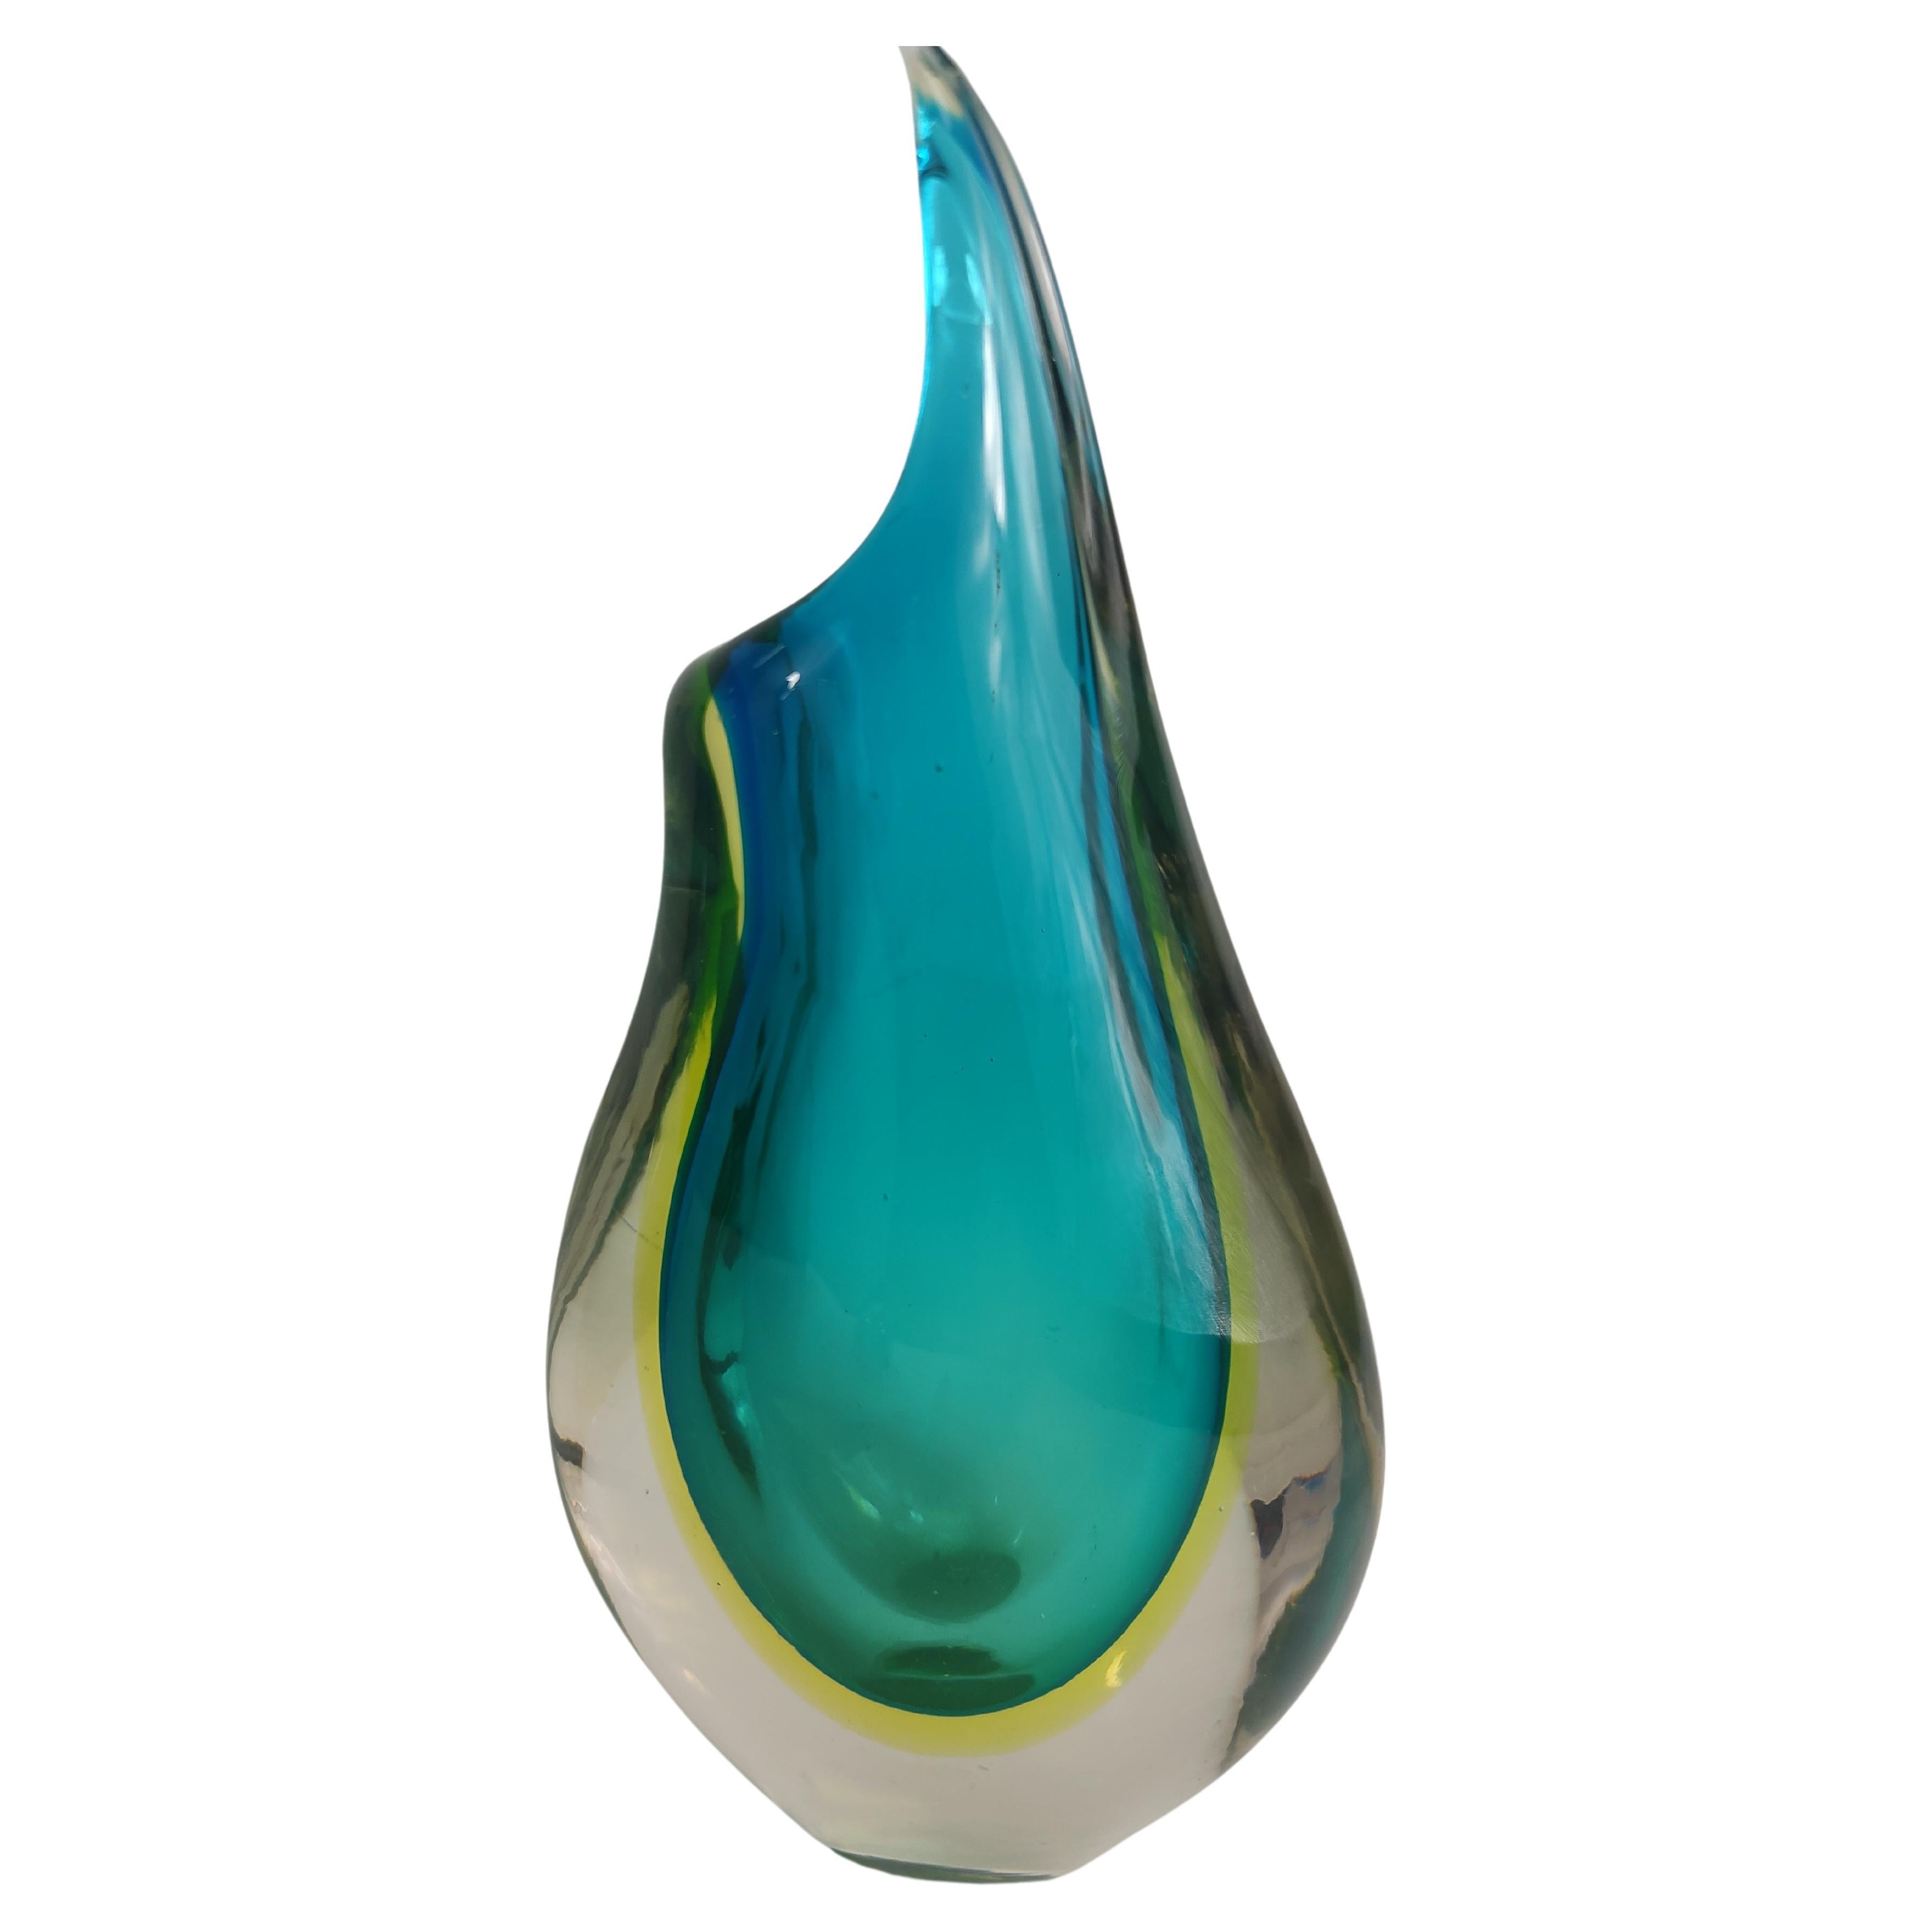 Fabuleuse paire de vases en verre d'art Sommerso de Murano, Italie, vers 1970. Superbe bleu encastré dans un verre transparent d'un peu plus de 10 pouces de haut par 5 de large. Je suis en excellent état vintage avec seulement un peu d'usure normale